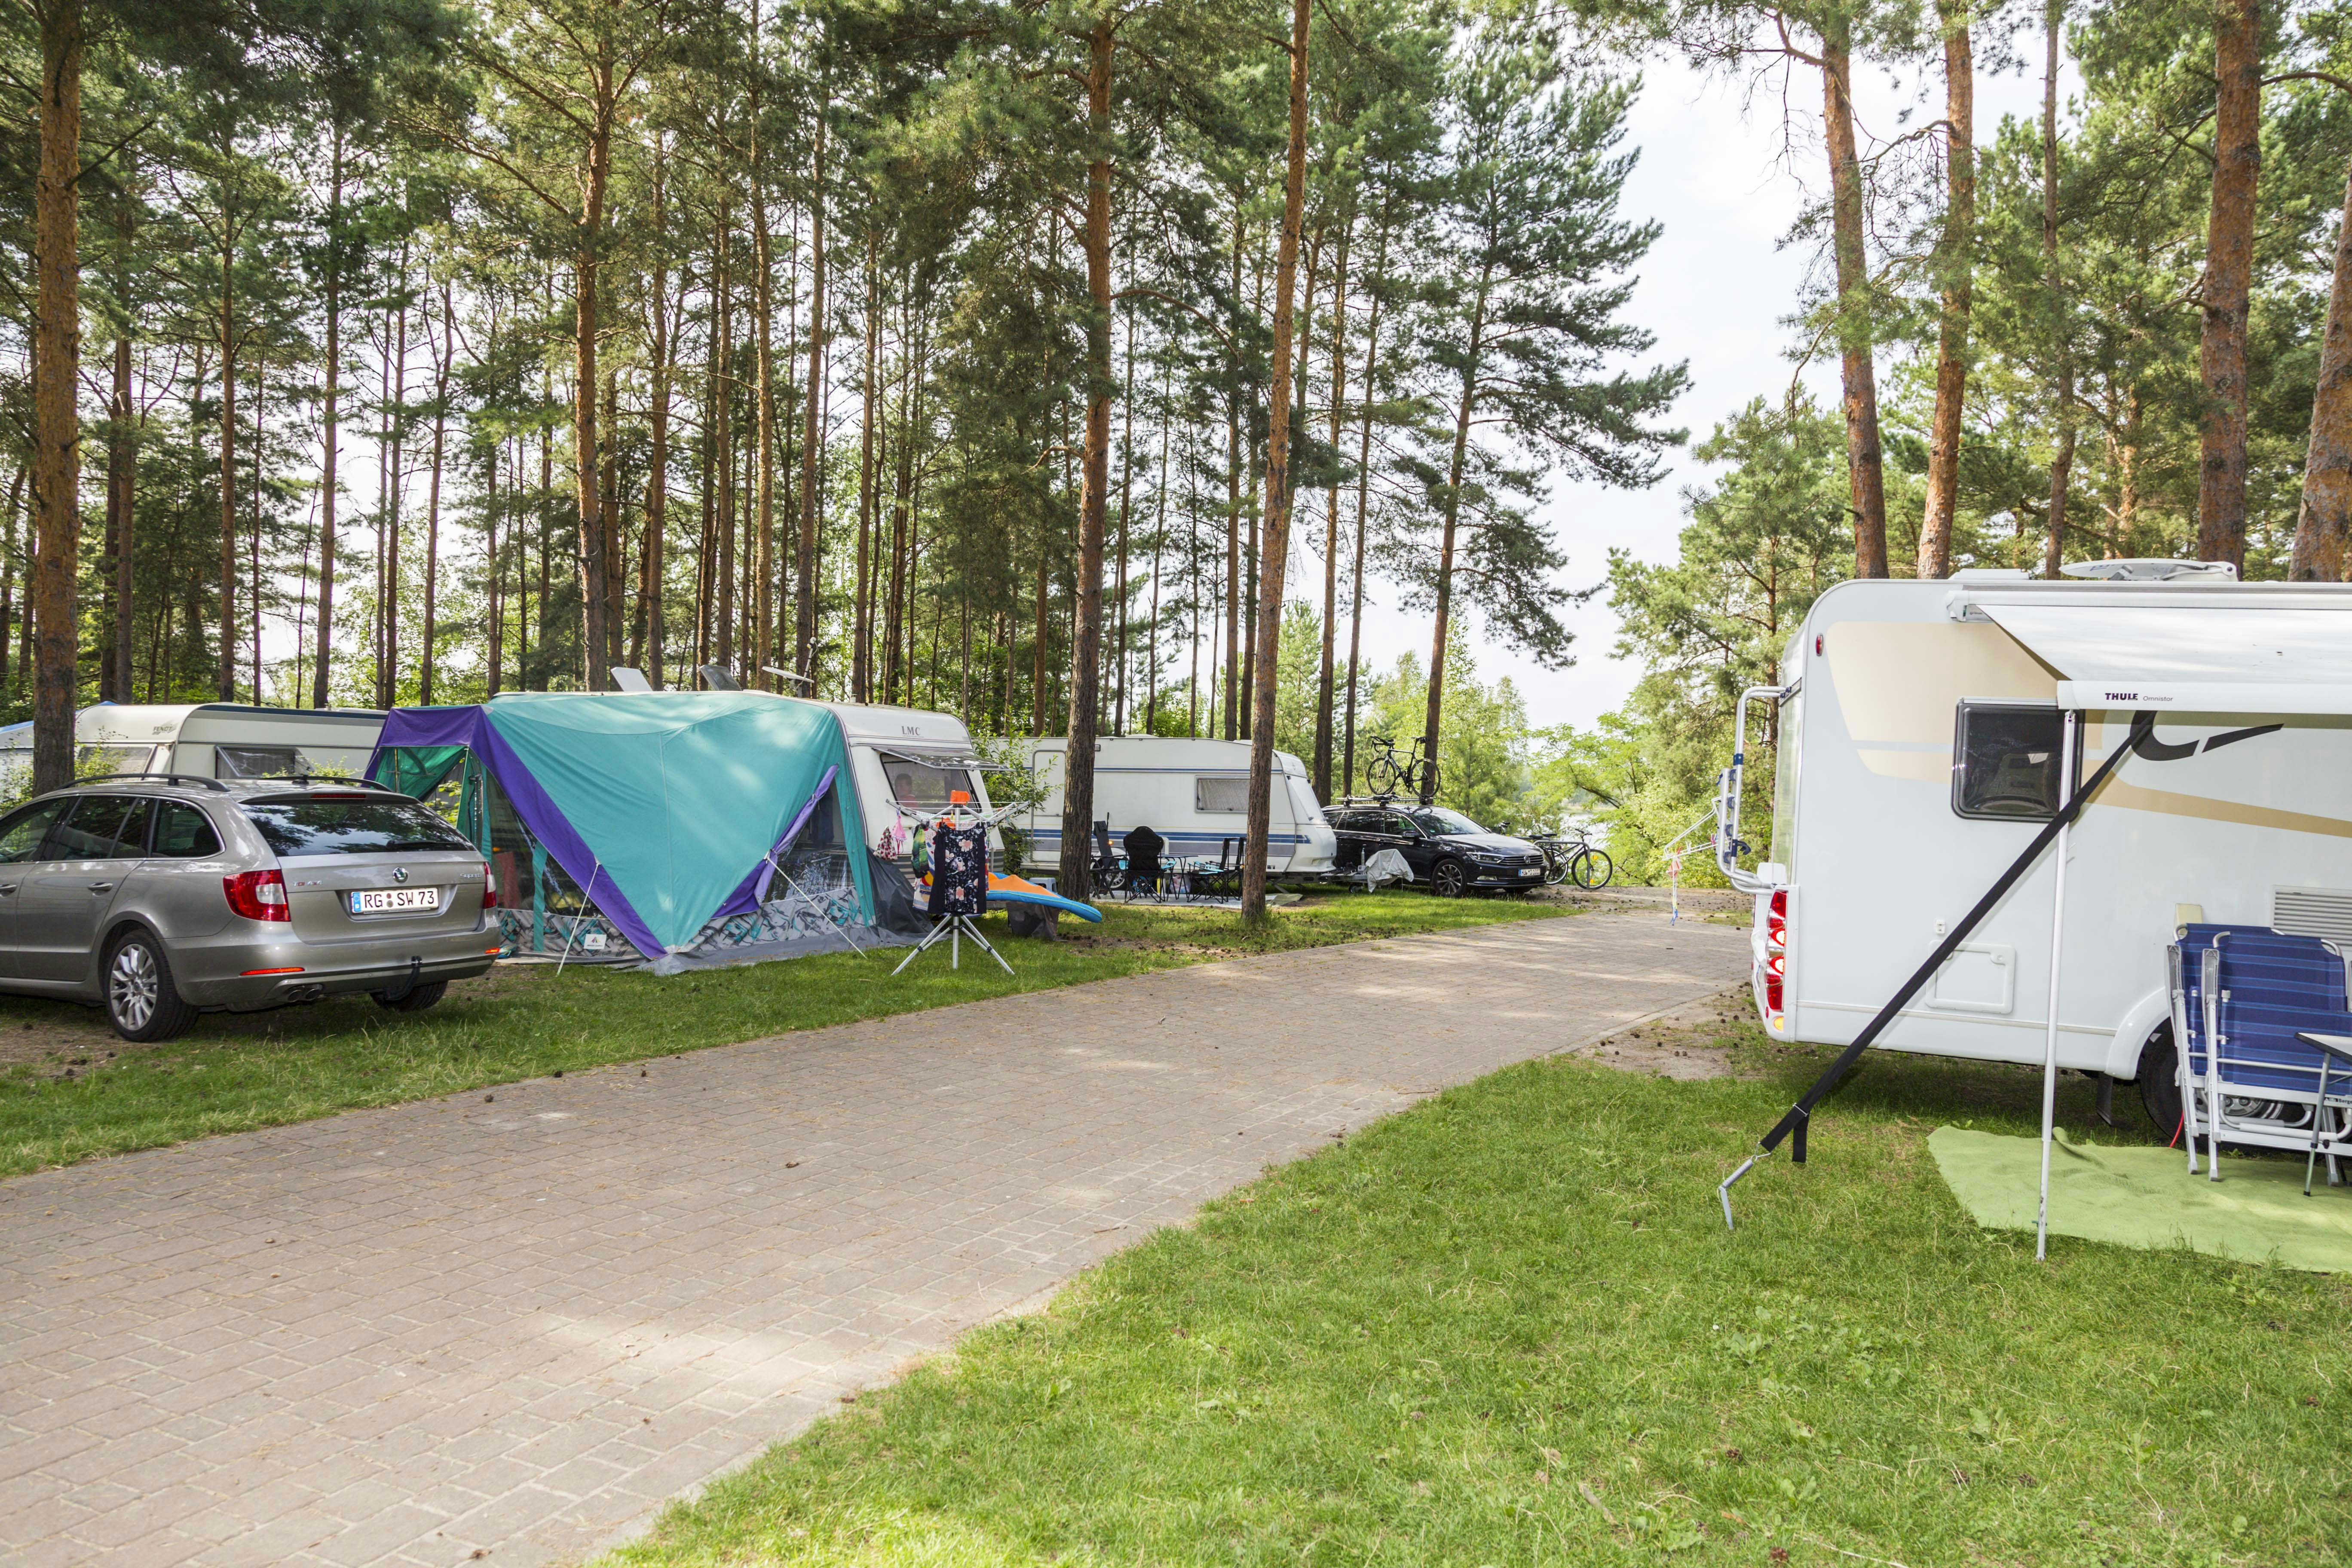 Zeltplätze in Deutschland in Jugendherbergen: Jetzt buchen!